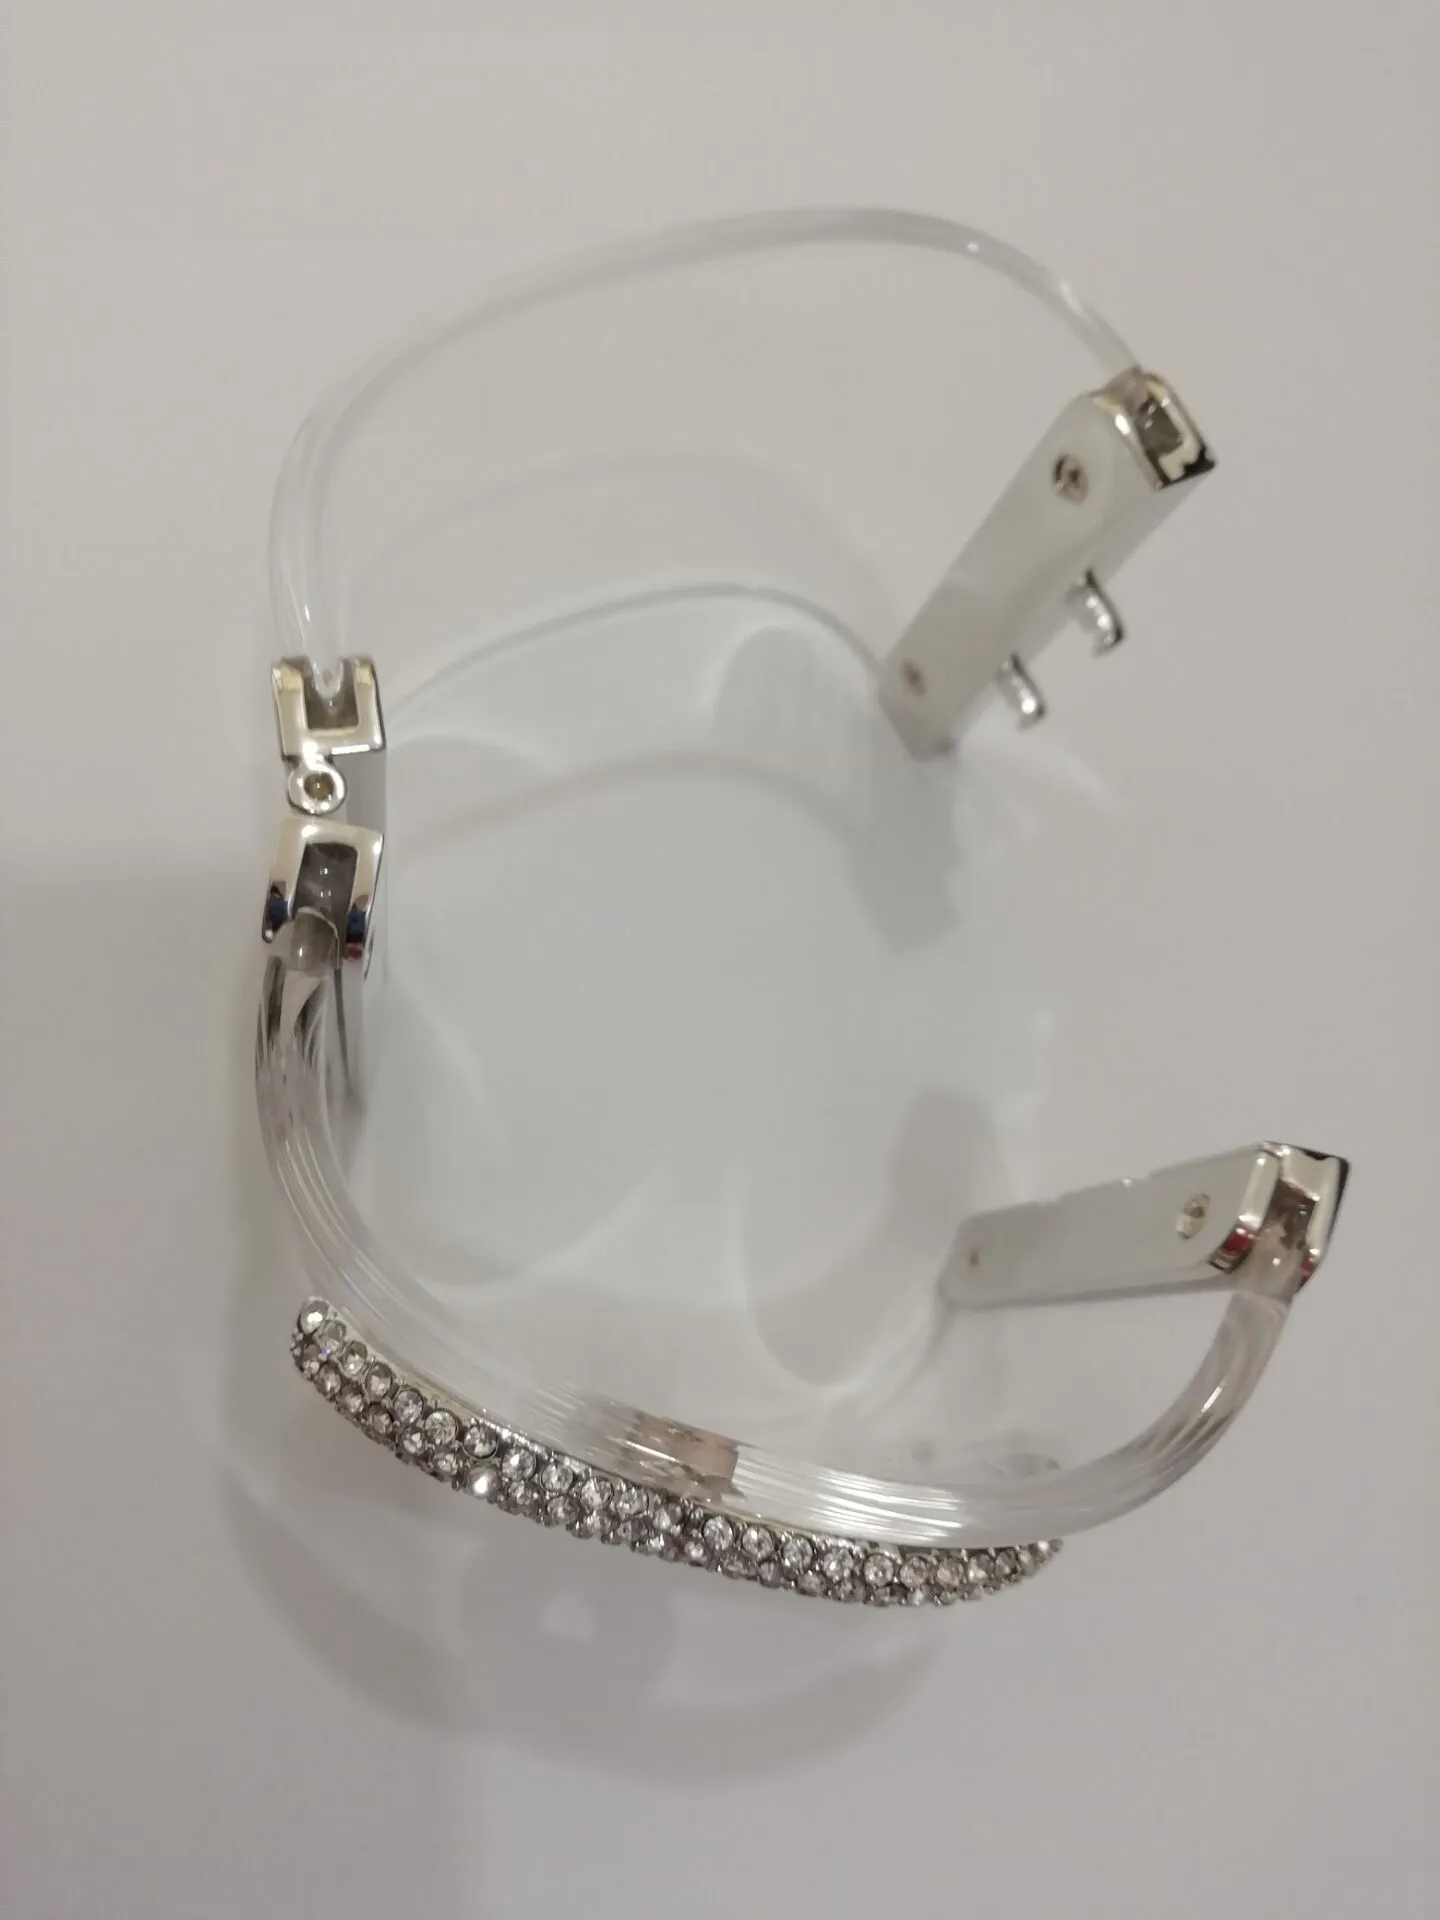 Moda popular alta versão pulseira de acrílico pulseira senhora designer pulseiras pulseiras para festa casamento jóias com papel Handbag219h